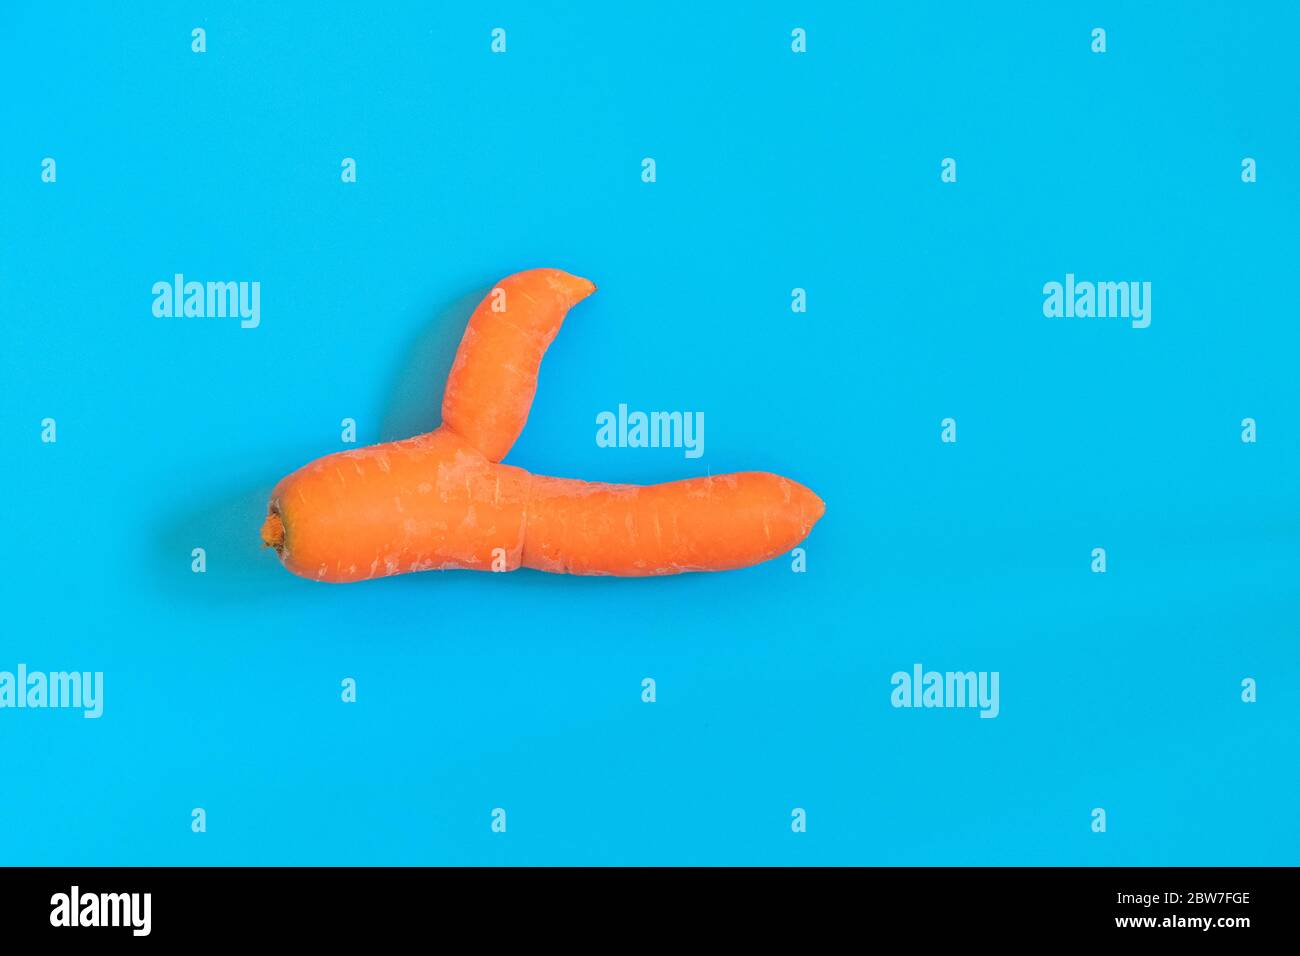 Brutto carota su sfondo blu mostra i pollici fino a sostegno dei rifiuti alimentari ridurre la tendenza. Immagine con copia spazio, vista dall'alto Foto Stock